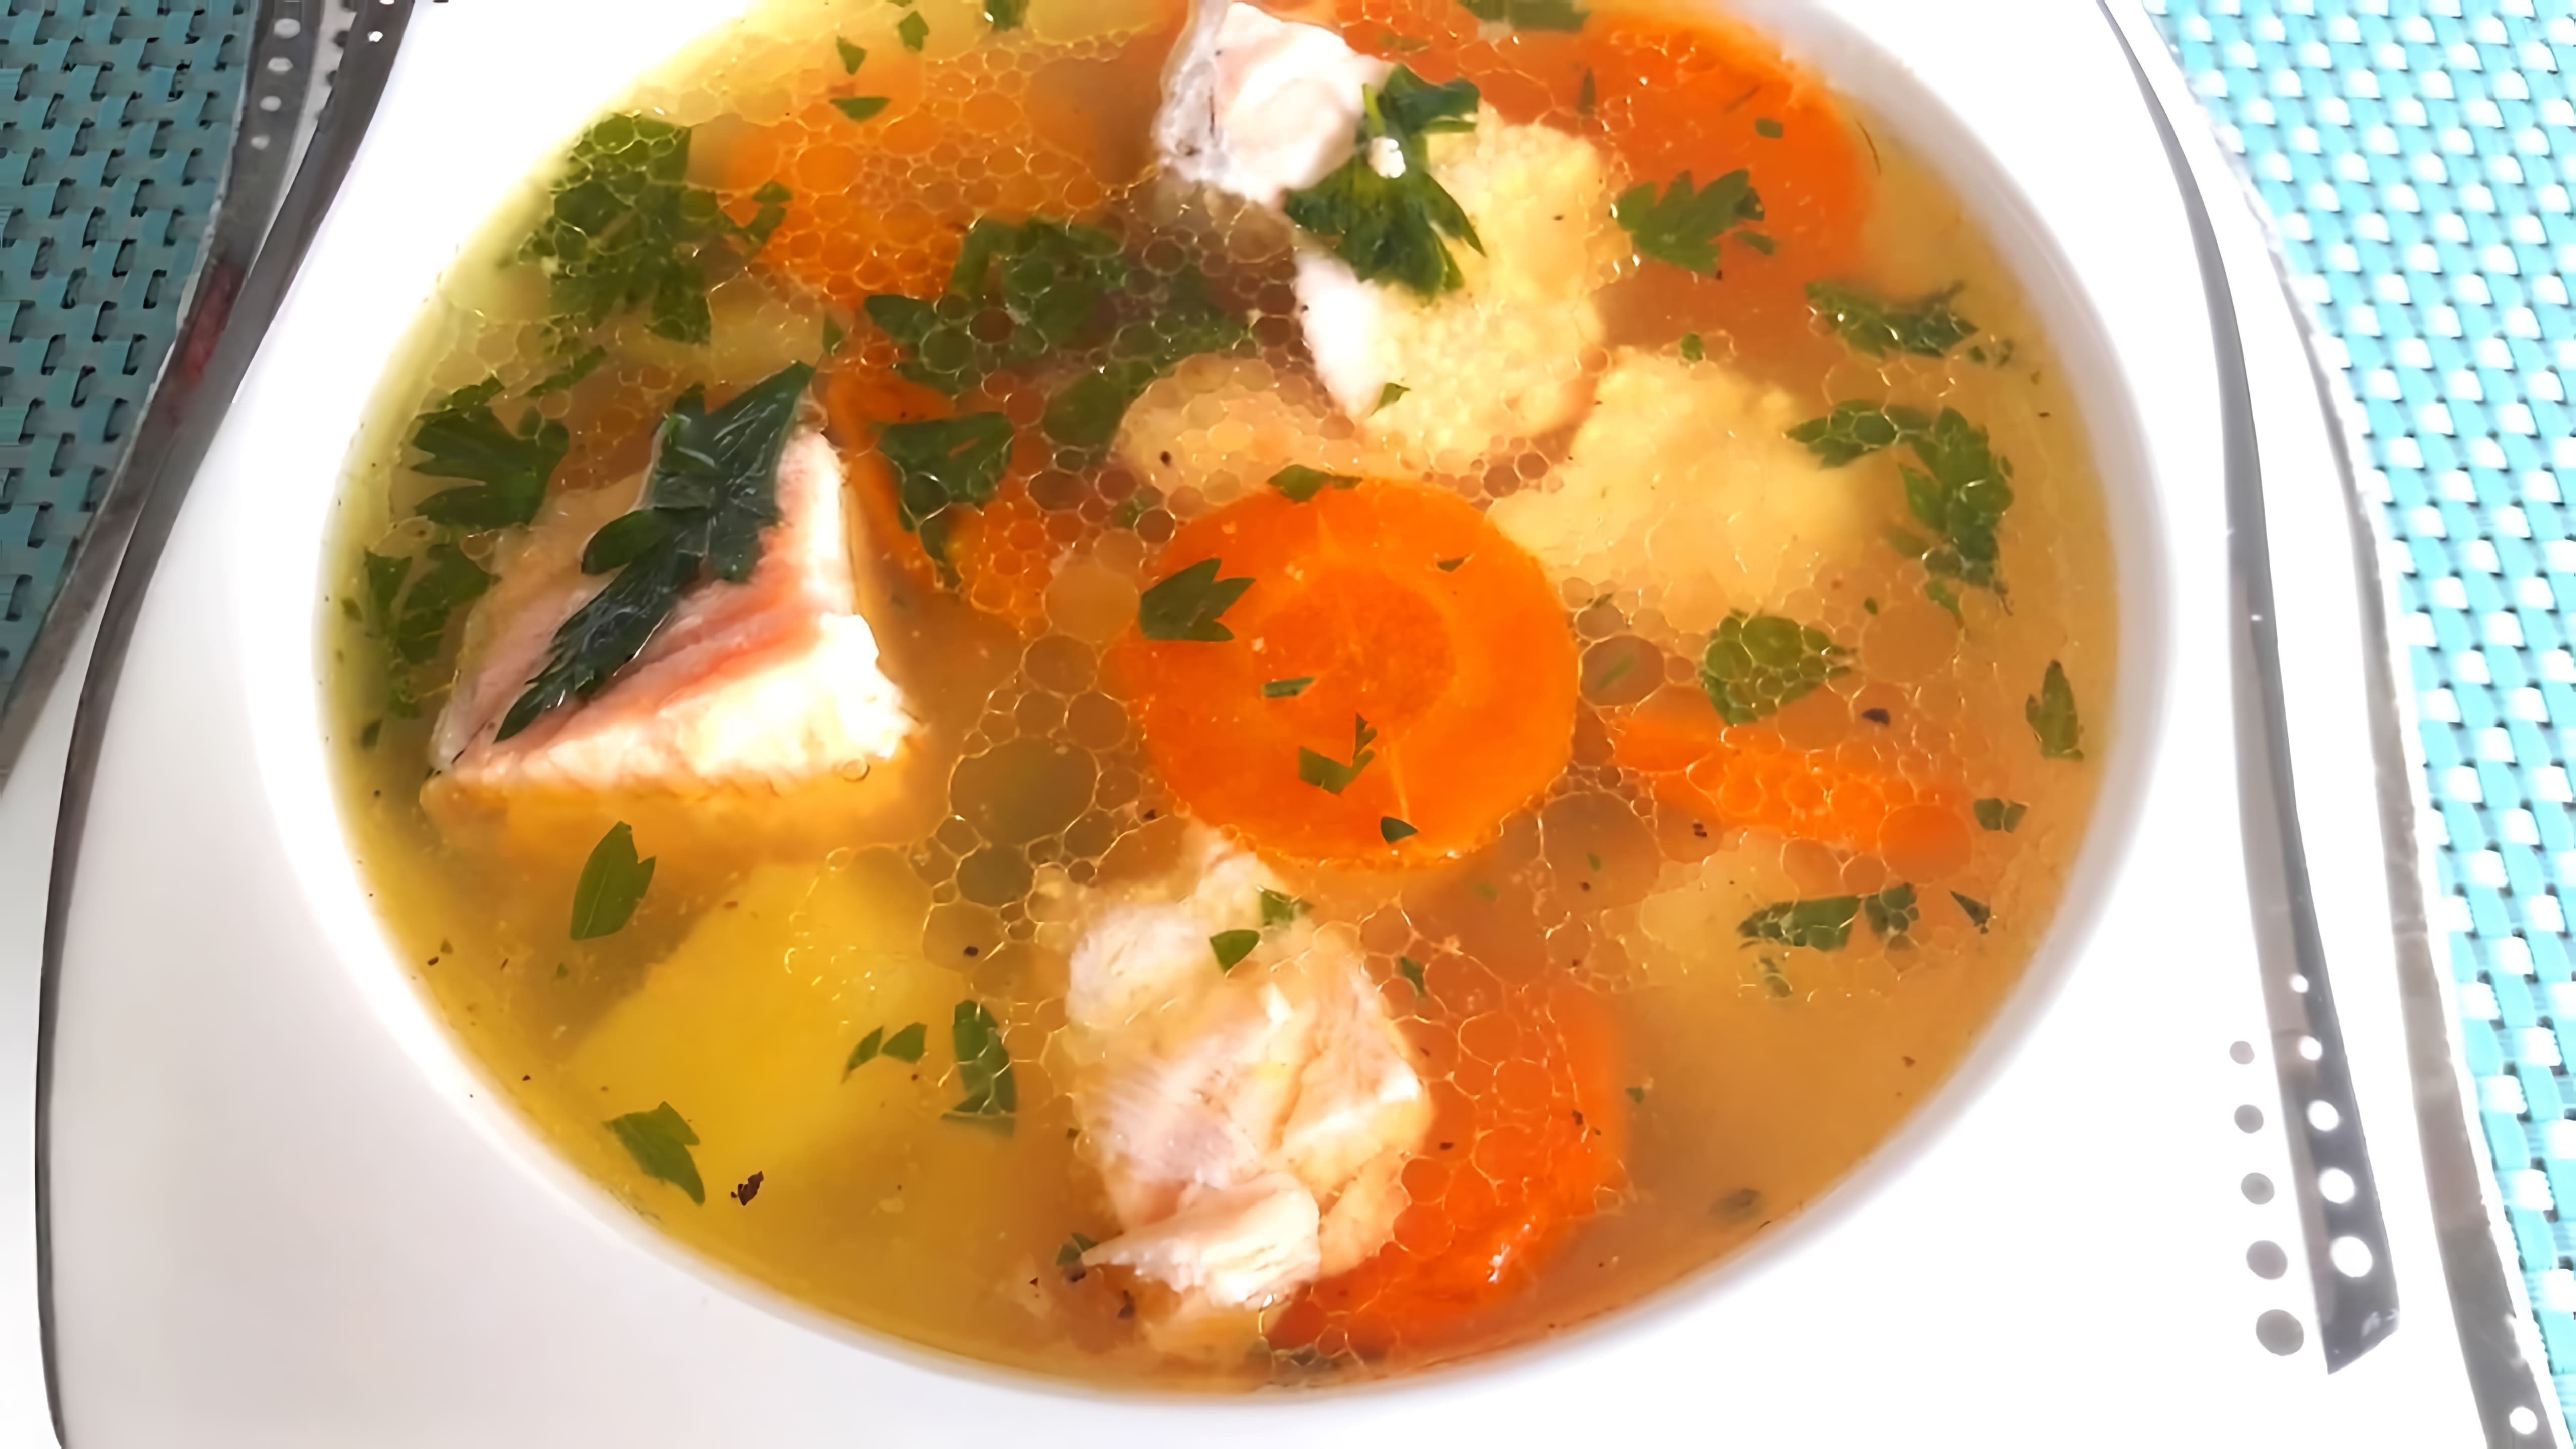 СУП ИЗ КРАСНОЙ РЫБЫ. Как вкусно приготовить рыбный суп. Легкий, вкусный рецепт супчика